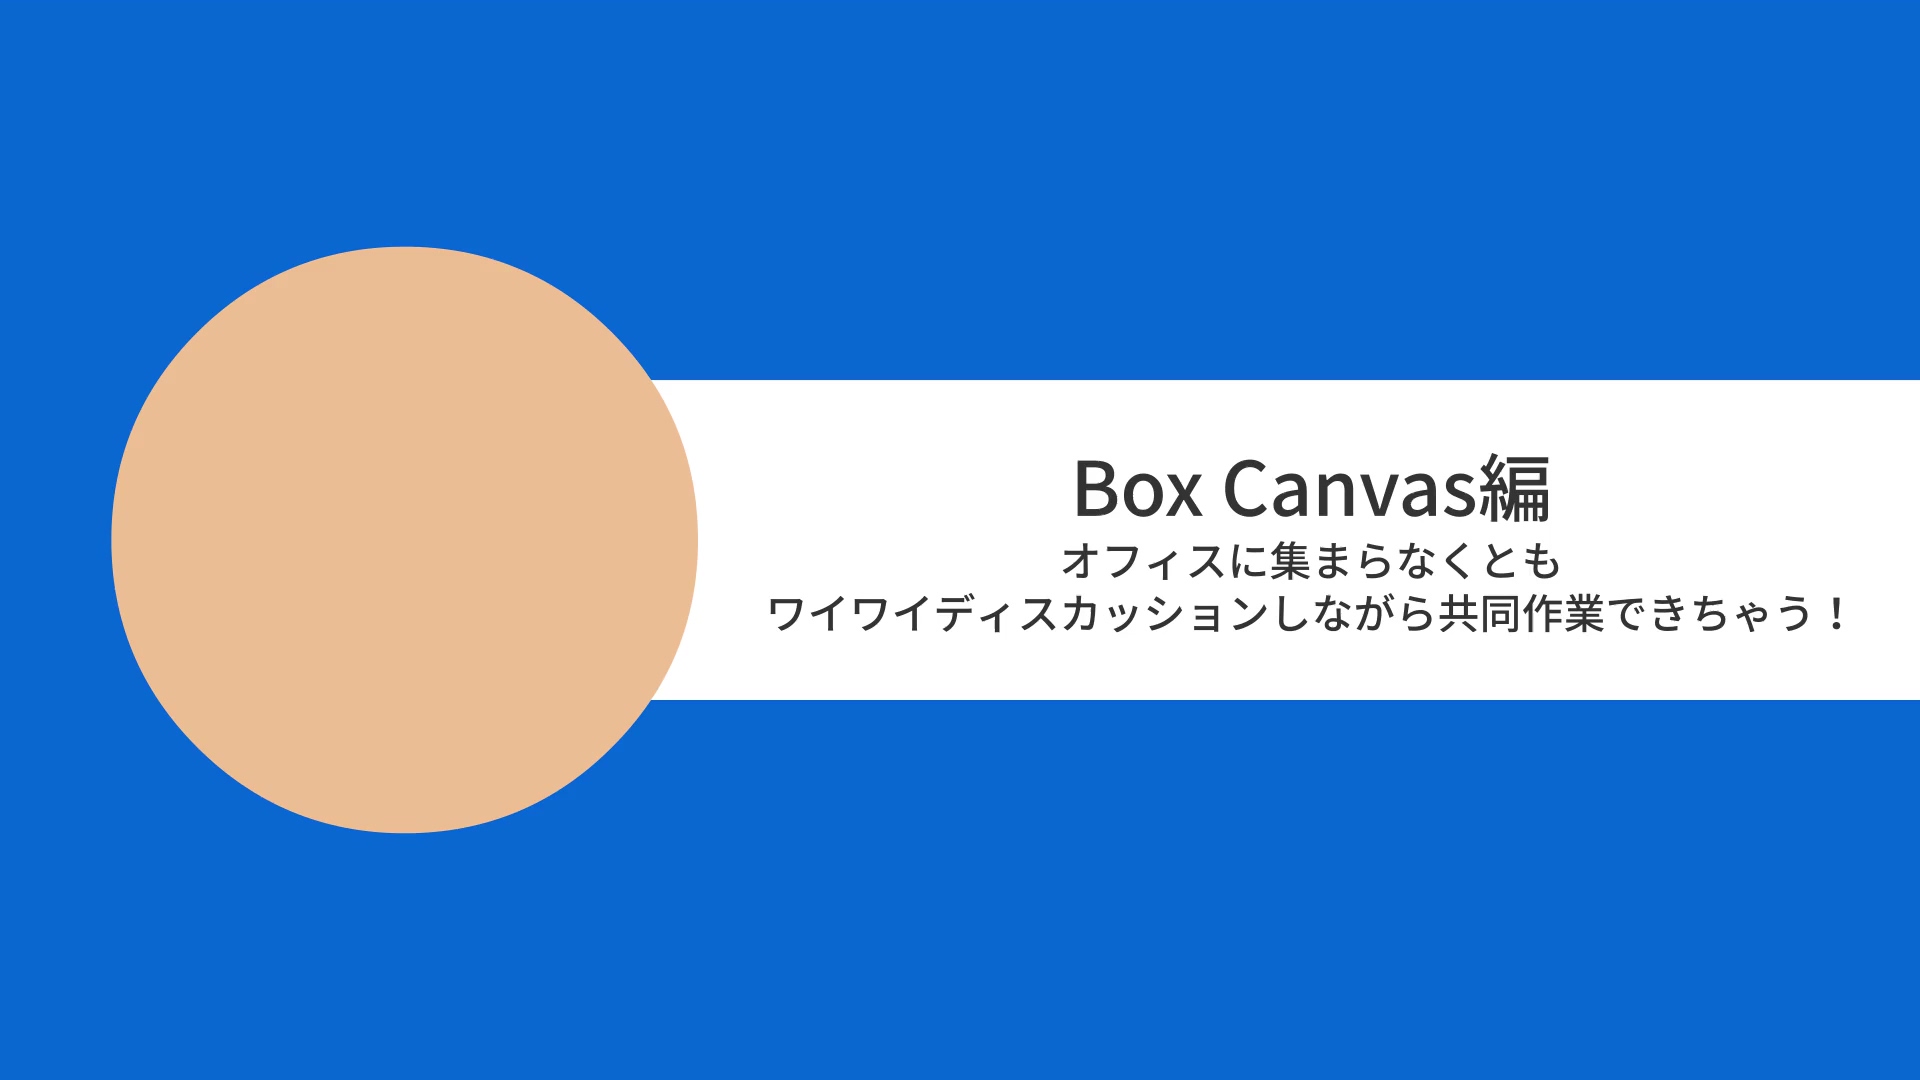 [Boxユースケースムービー] Box Canvas編　オフィスに集まらなくともワイワイディスカッションしながら共同作業